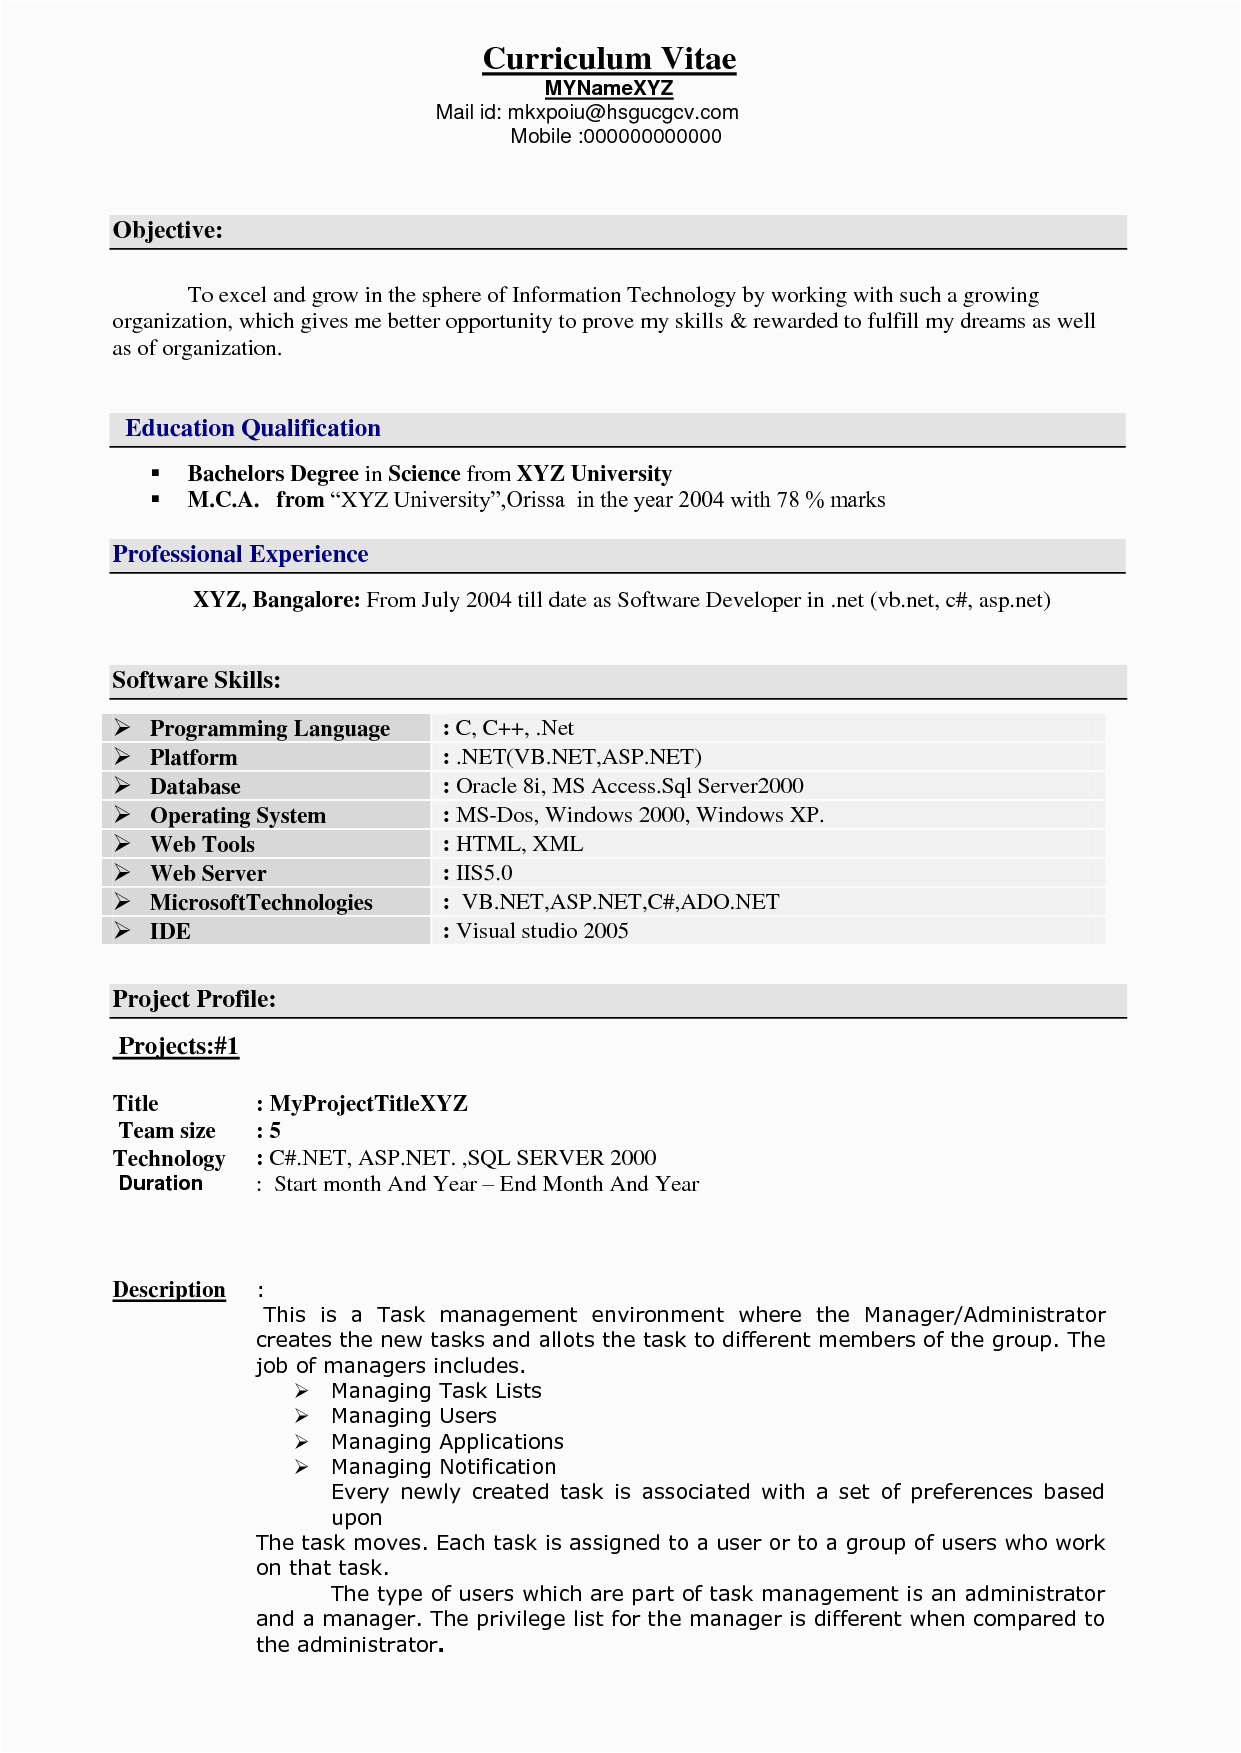 experience resume format for xml developer